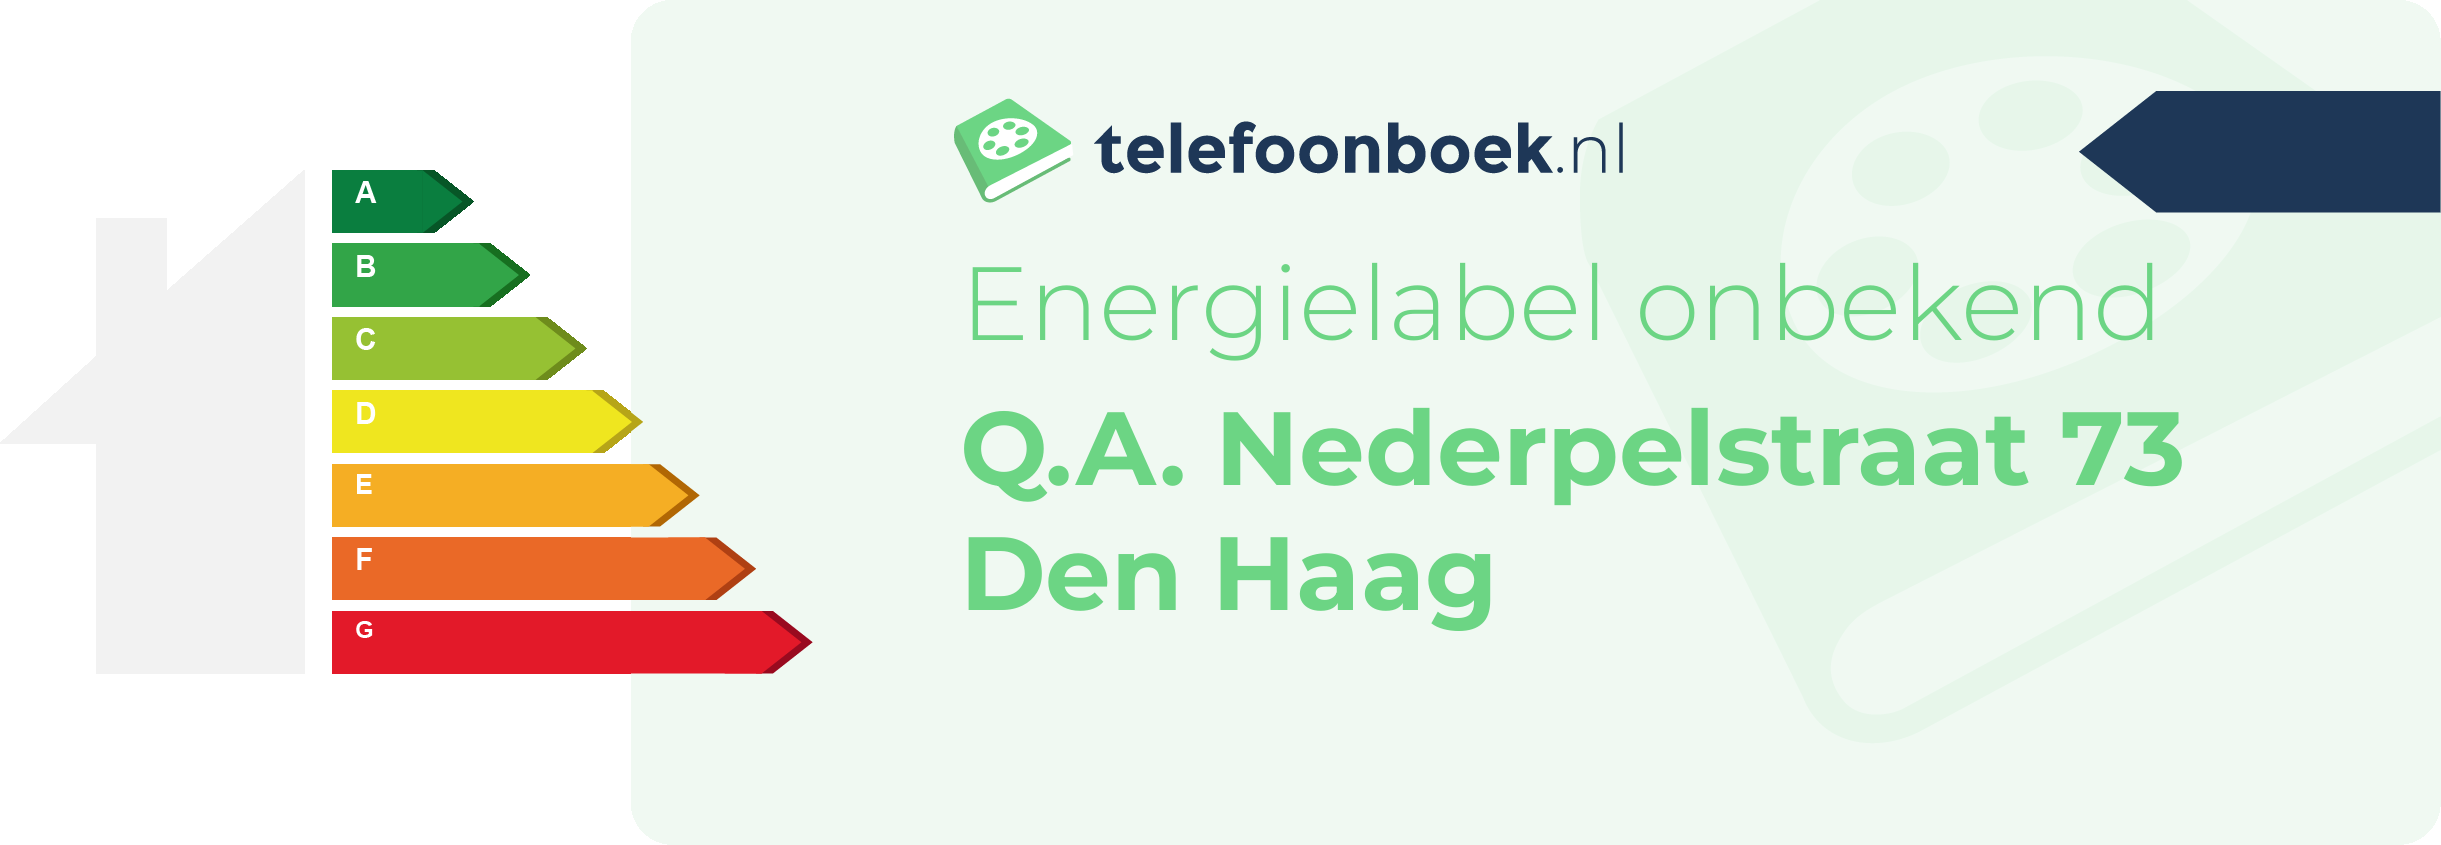 Energielabel Q.A. Nederpelstraat 73 Den Haag